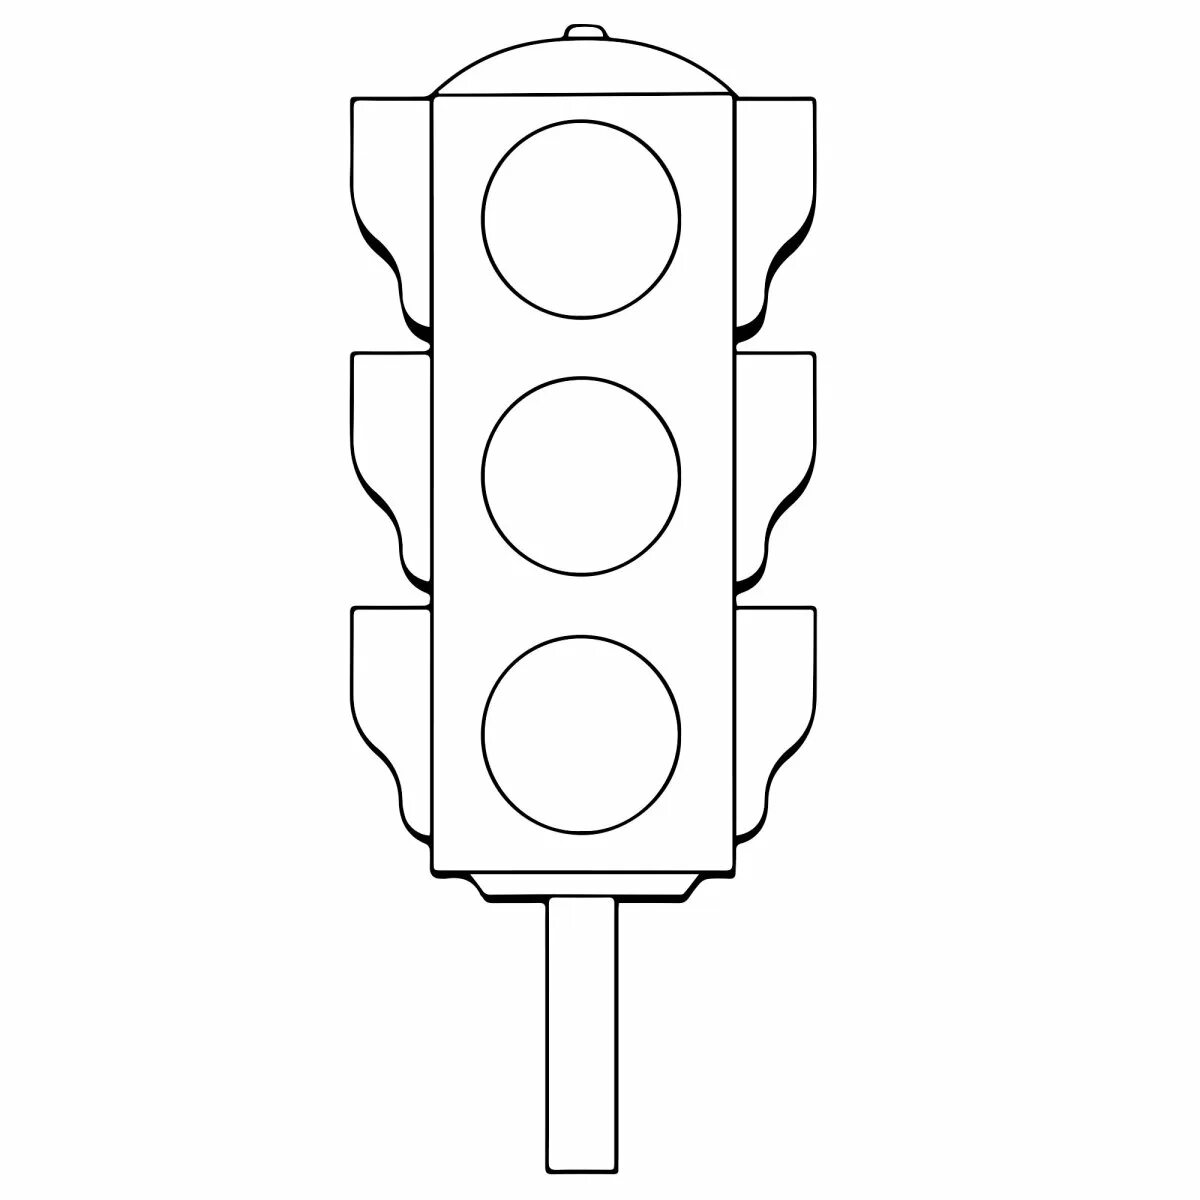 Traffic light for children 4 5 years old #9